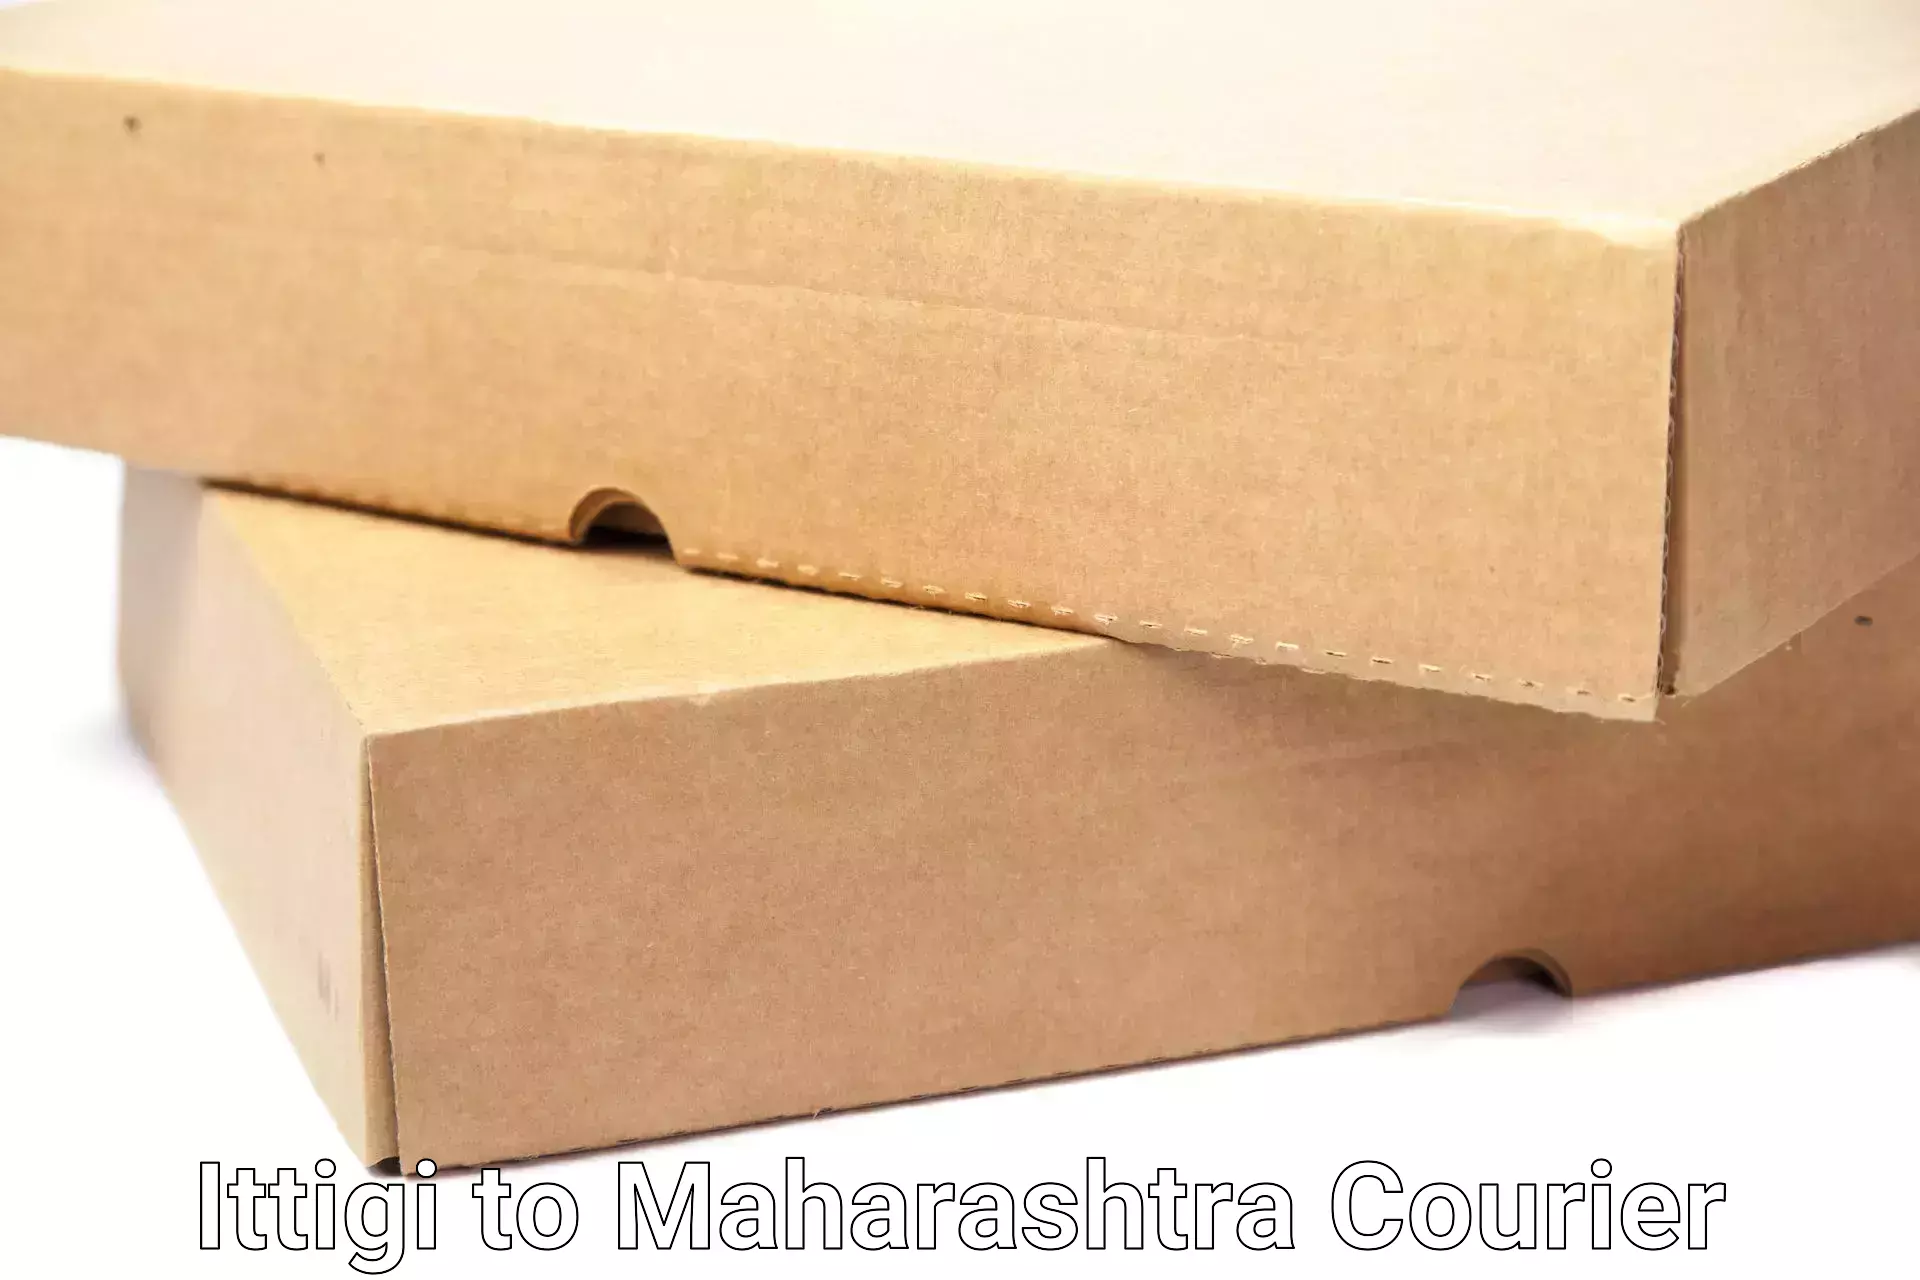 Furniture delivery service Ittigi to Walchandnagar